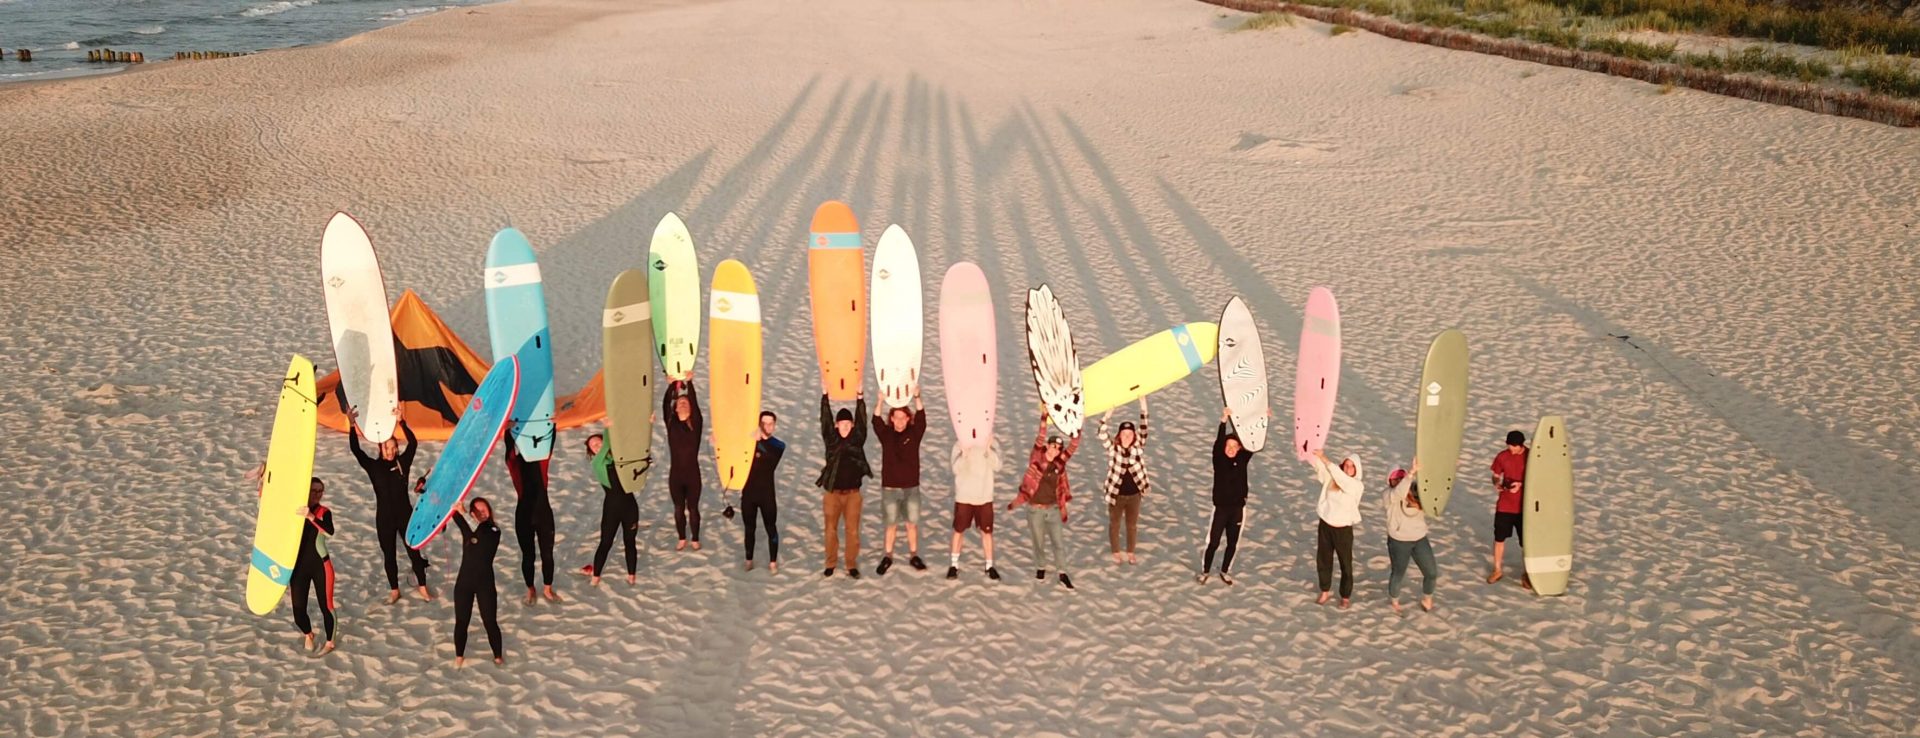 Deski surfingowe i kitesurfingowe – wszystko, co trzeba wiedzieć o wyborze sprzętu i nauce